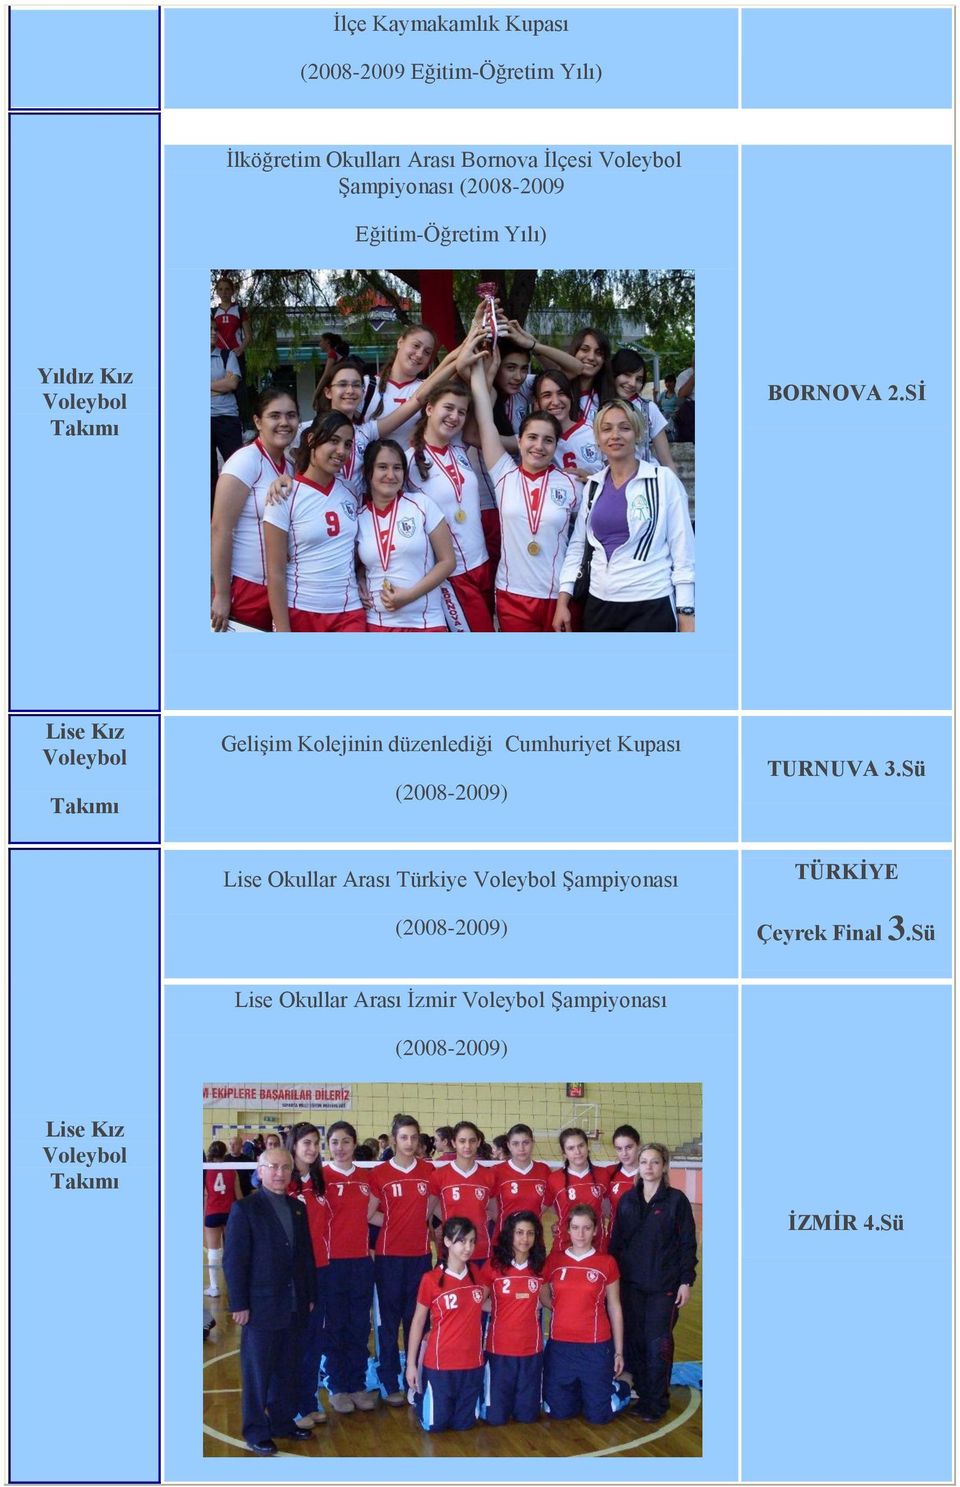 Sİ Lise Kız Gelişim Kolejinin düzenlediği Cumhuriyet Kupası (2008-2009) TURNUVA 3.